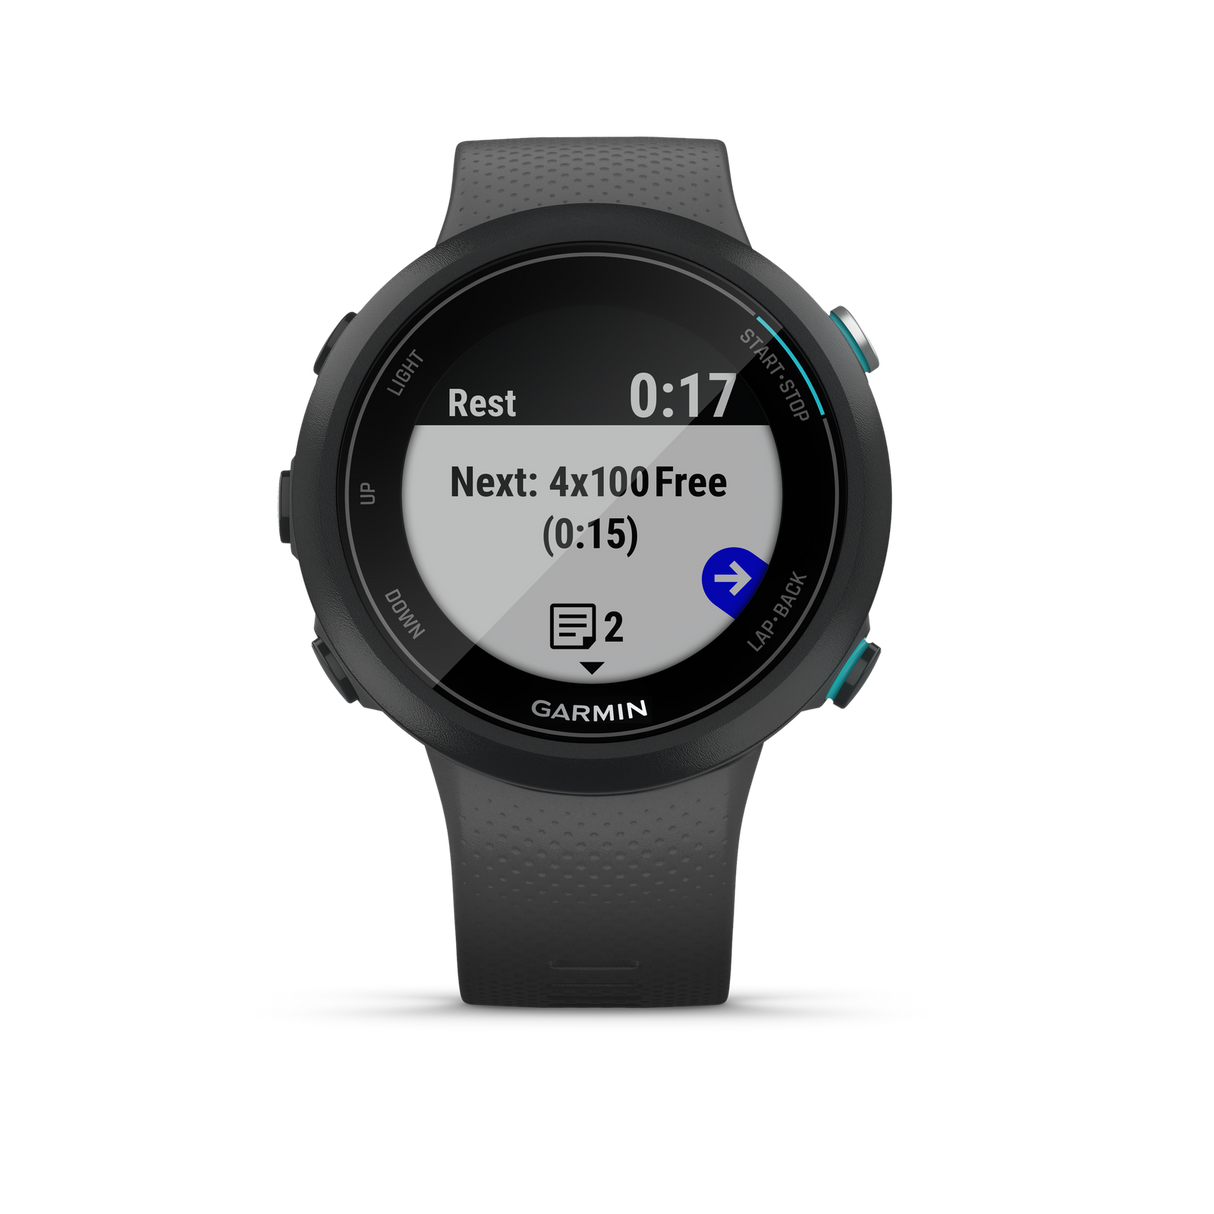 Garmin Swim 2 Smartwatch Slate